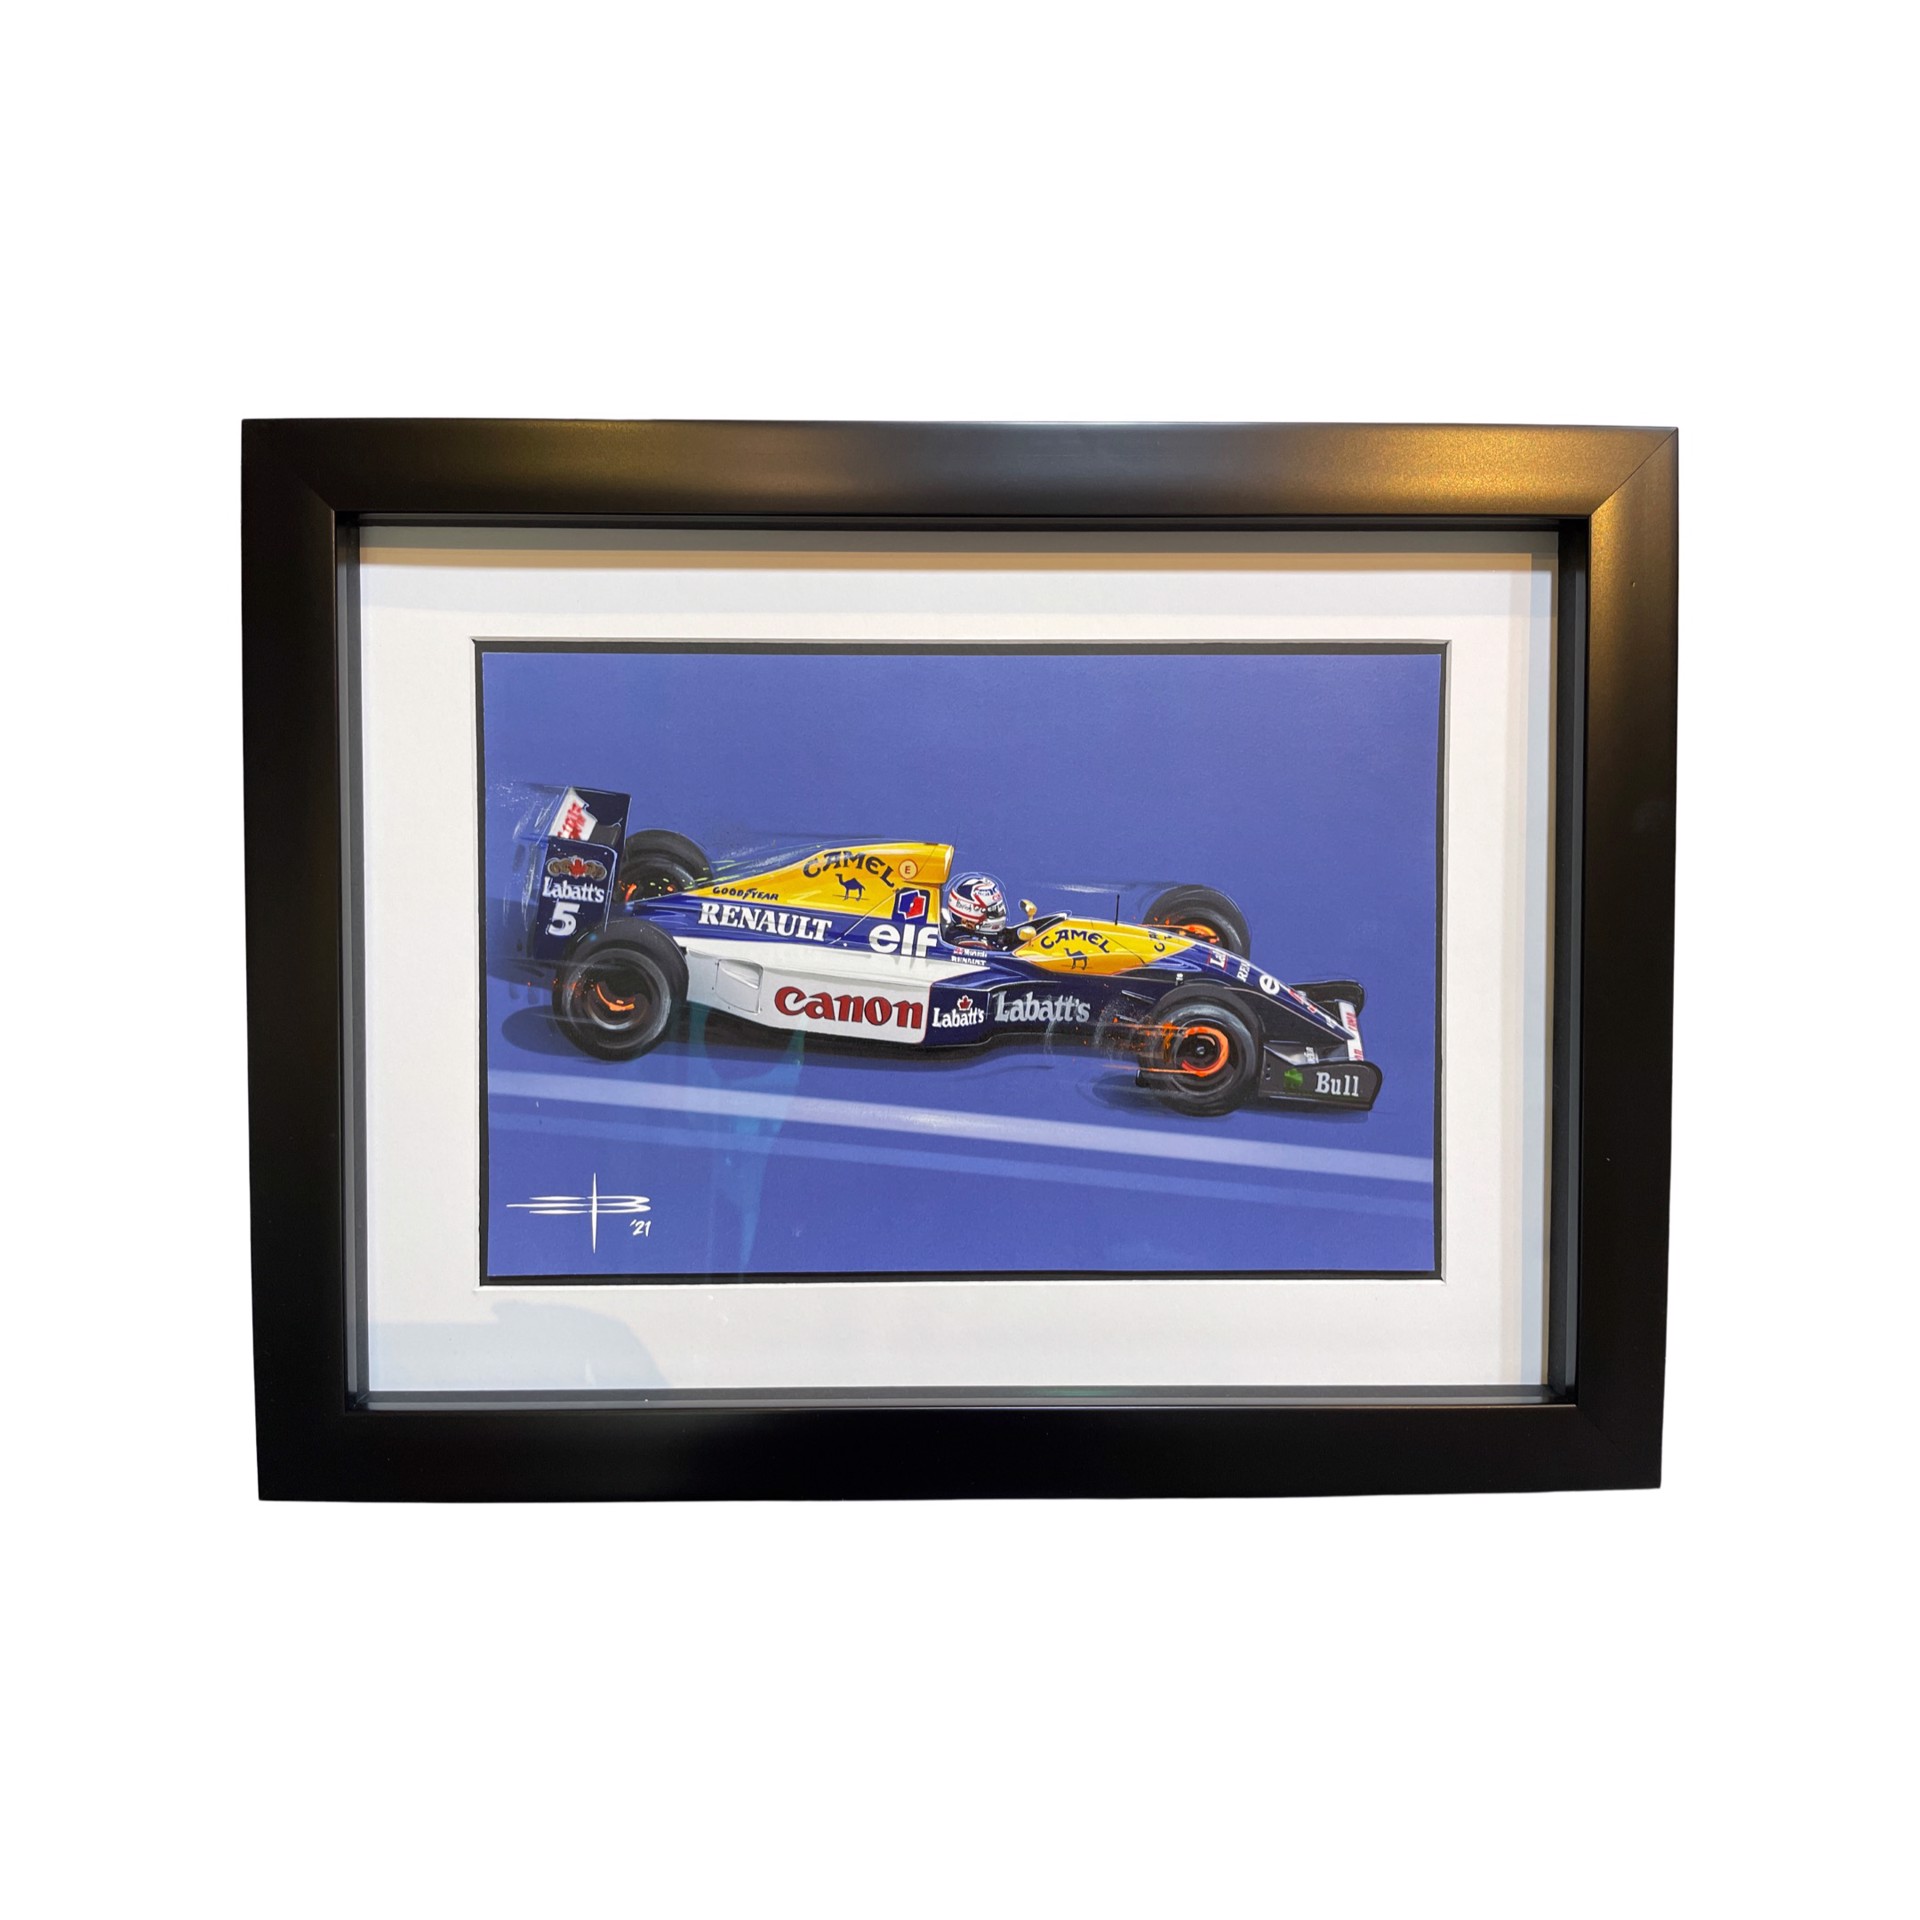 “Formula 1 Renault” by Emile Bouret